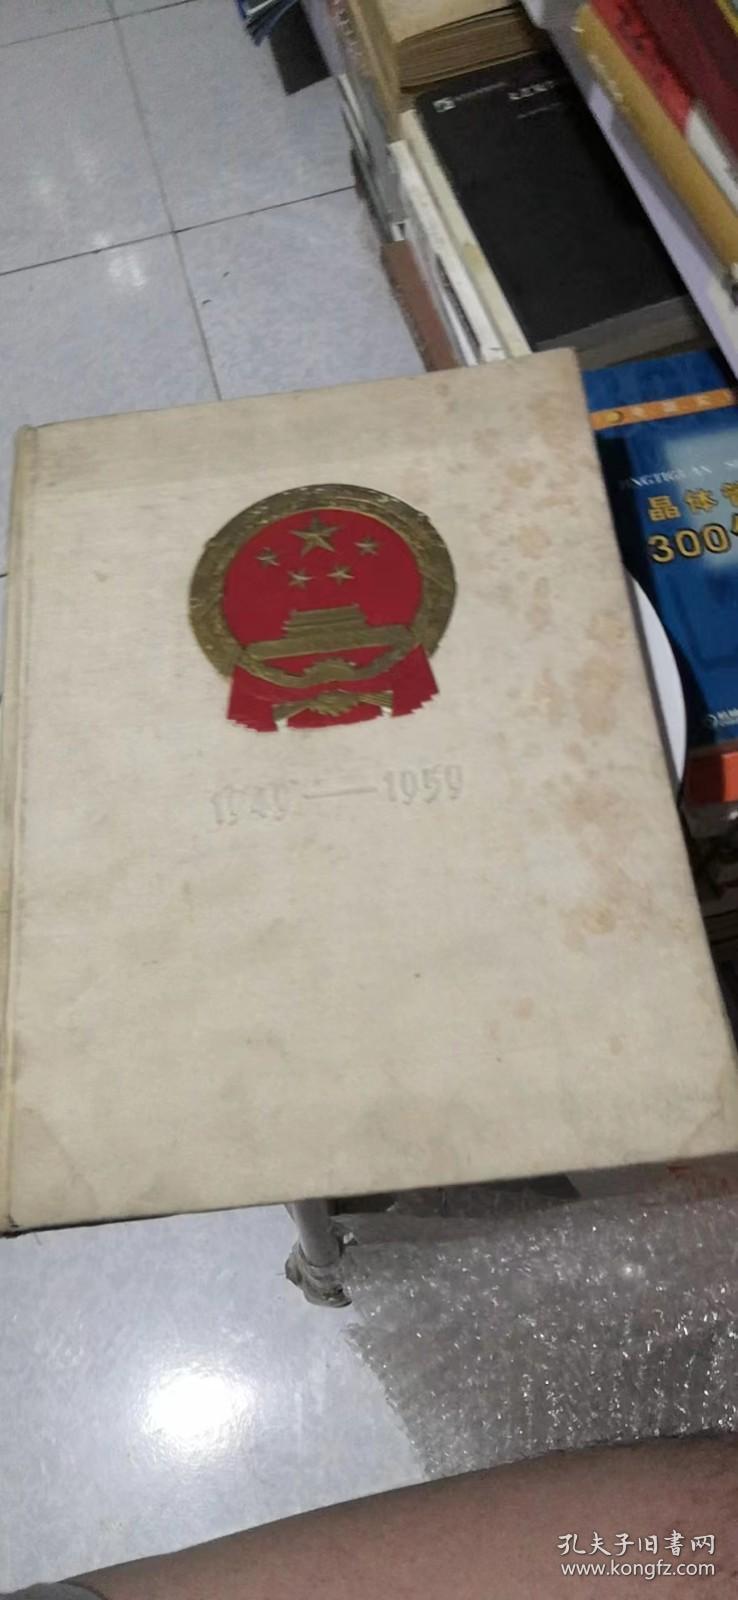 中华人民共和国成立十周年纪念画册 1949-1959